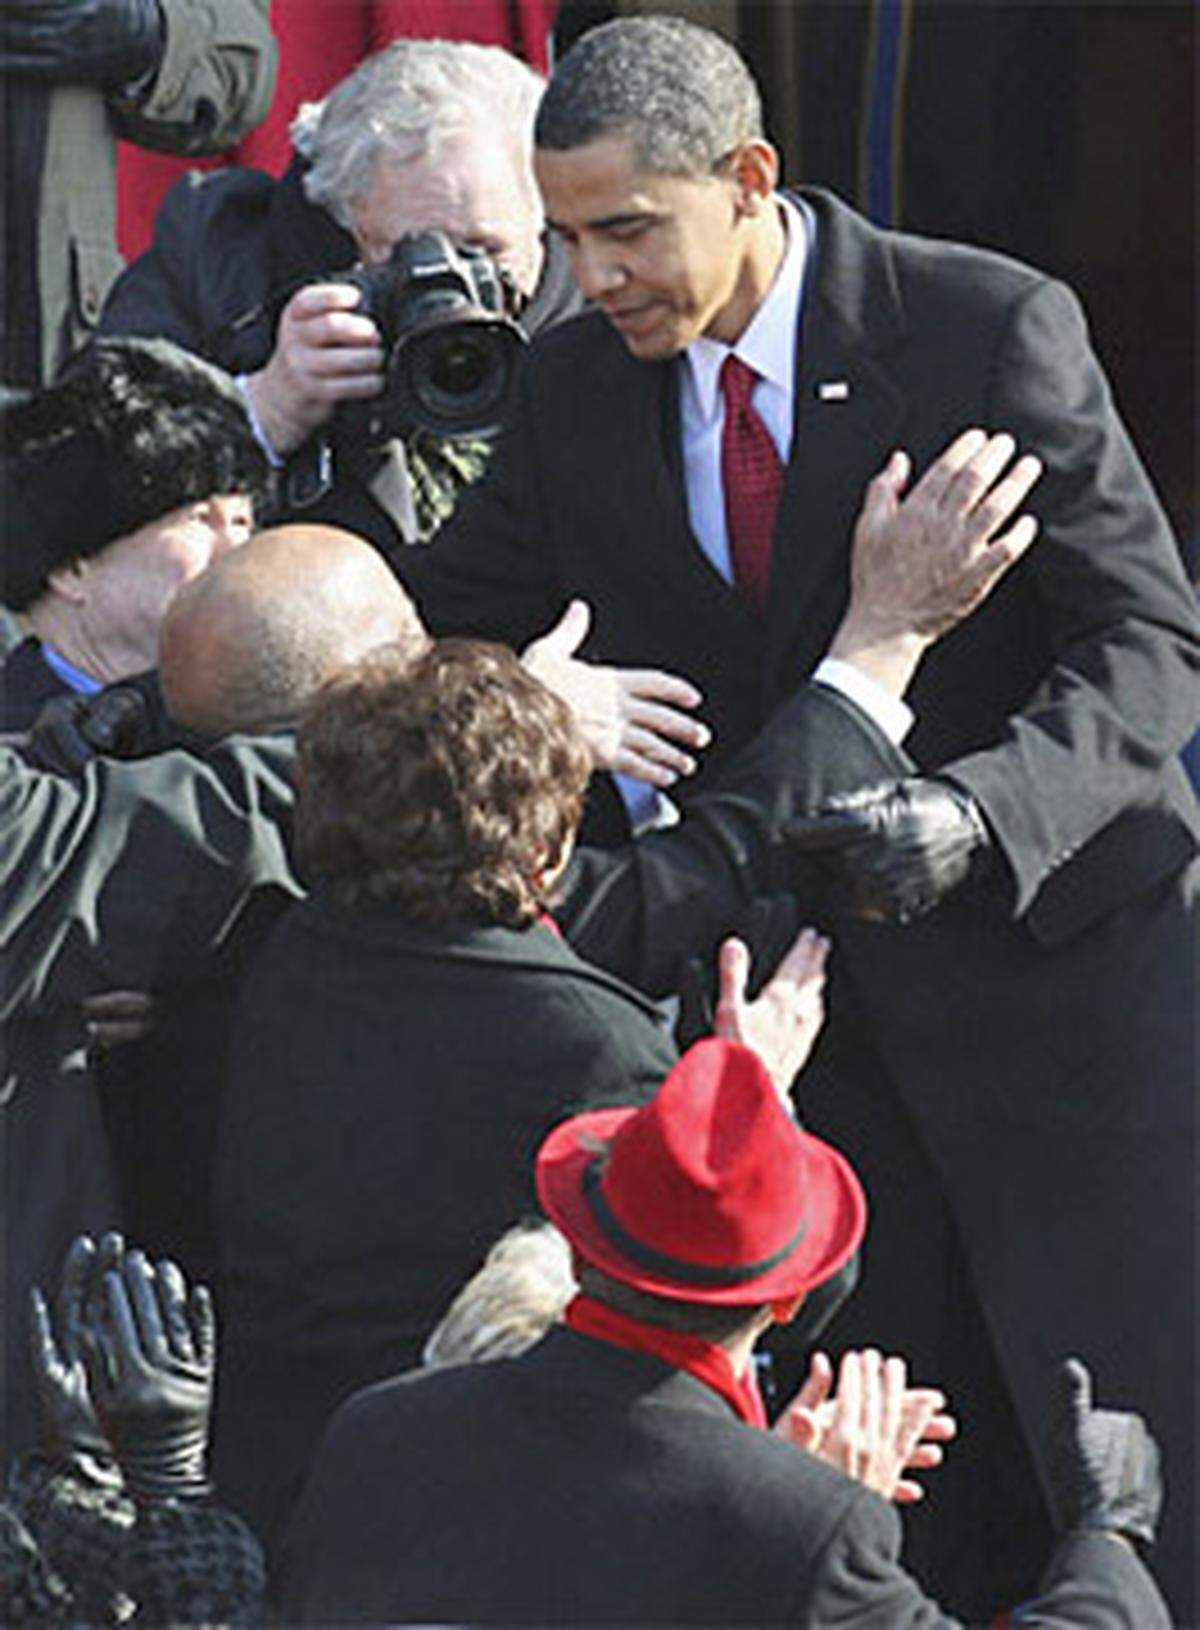 Obamas Auftritt wurde von ohrenbetäubendem Jubel begleitet, er musst unzählige Hände schütteln.